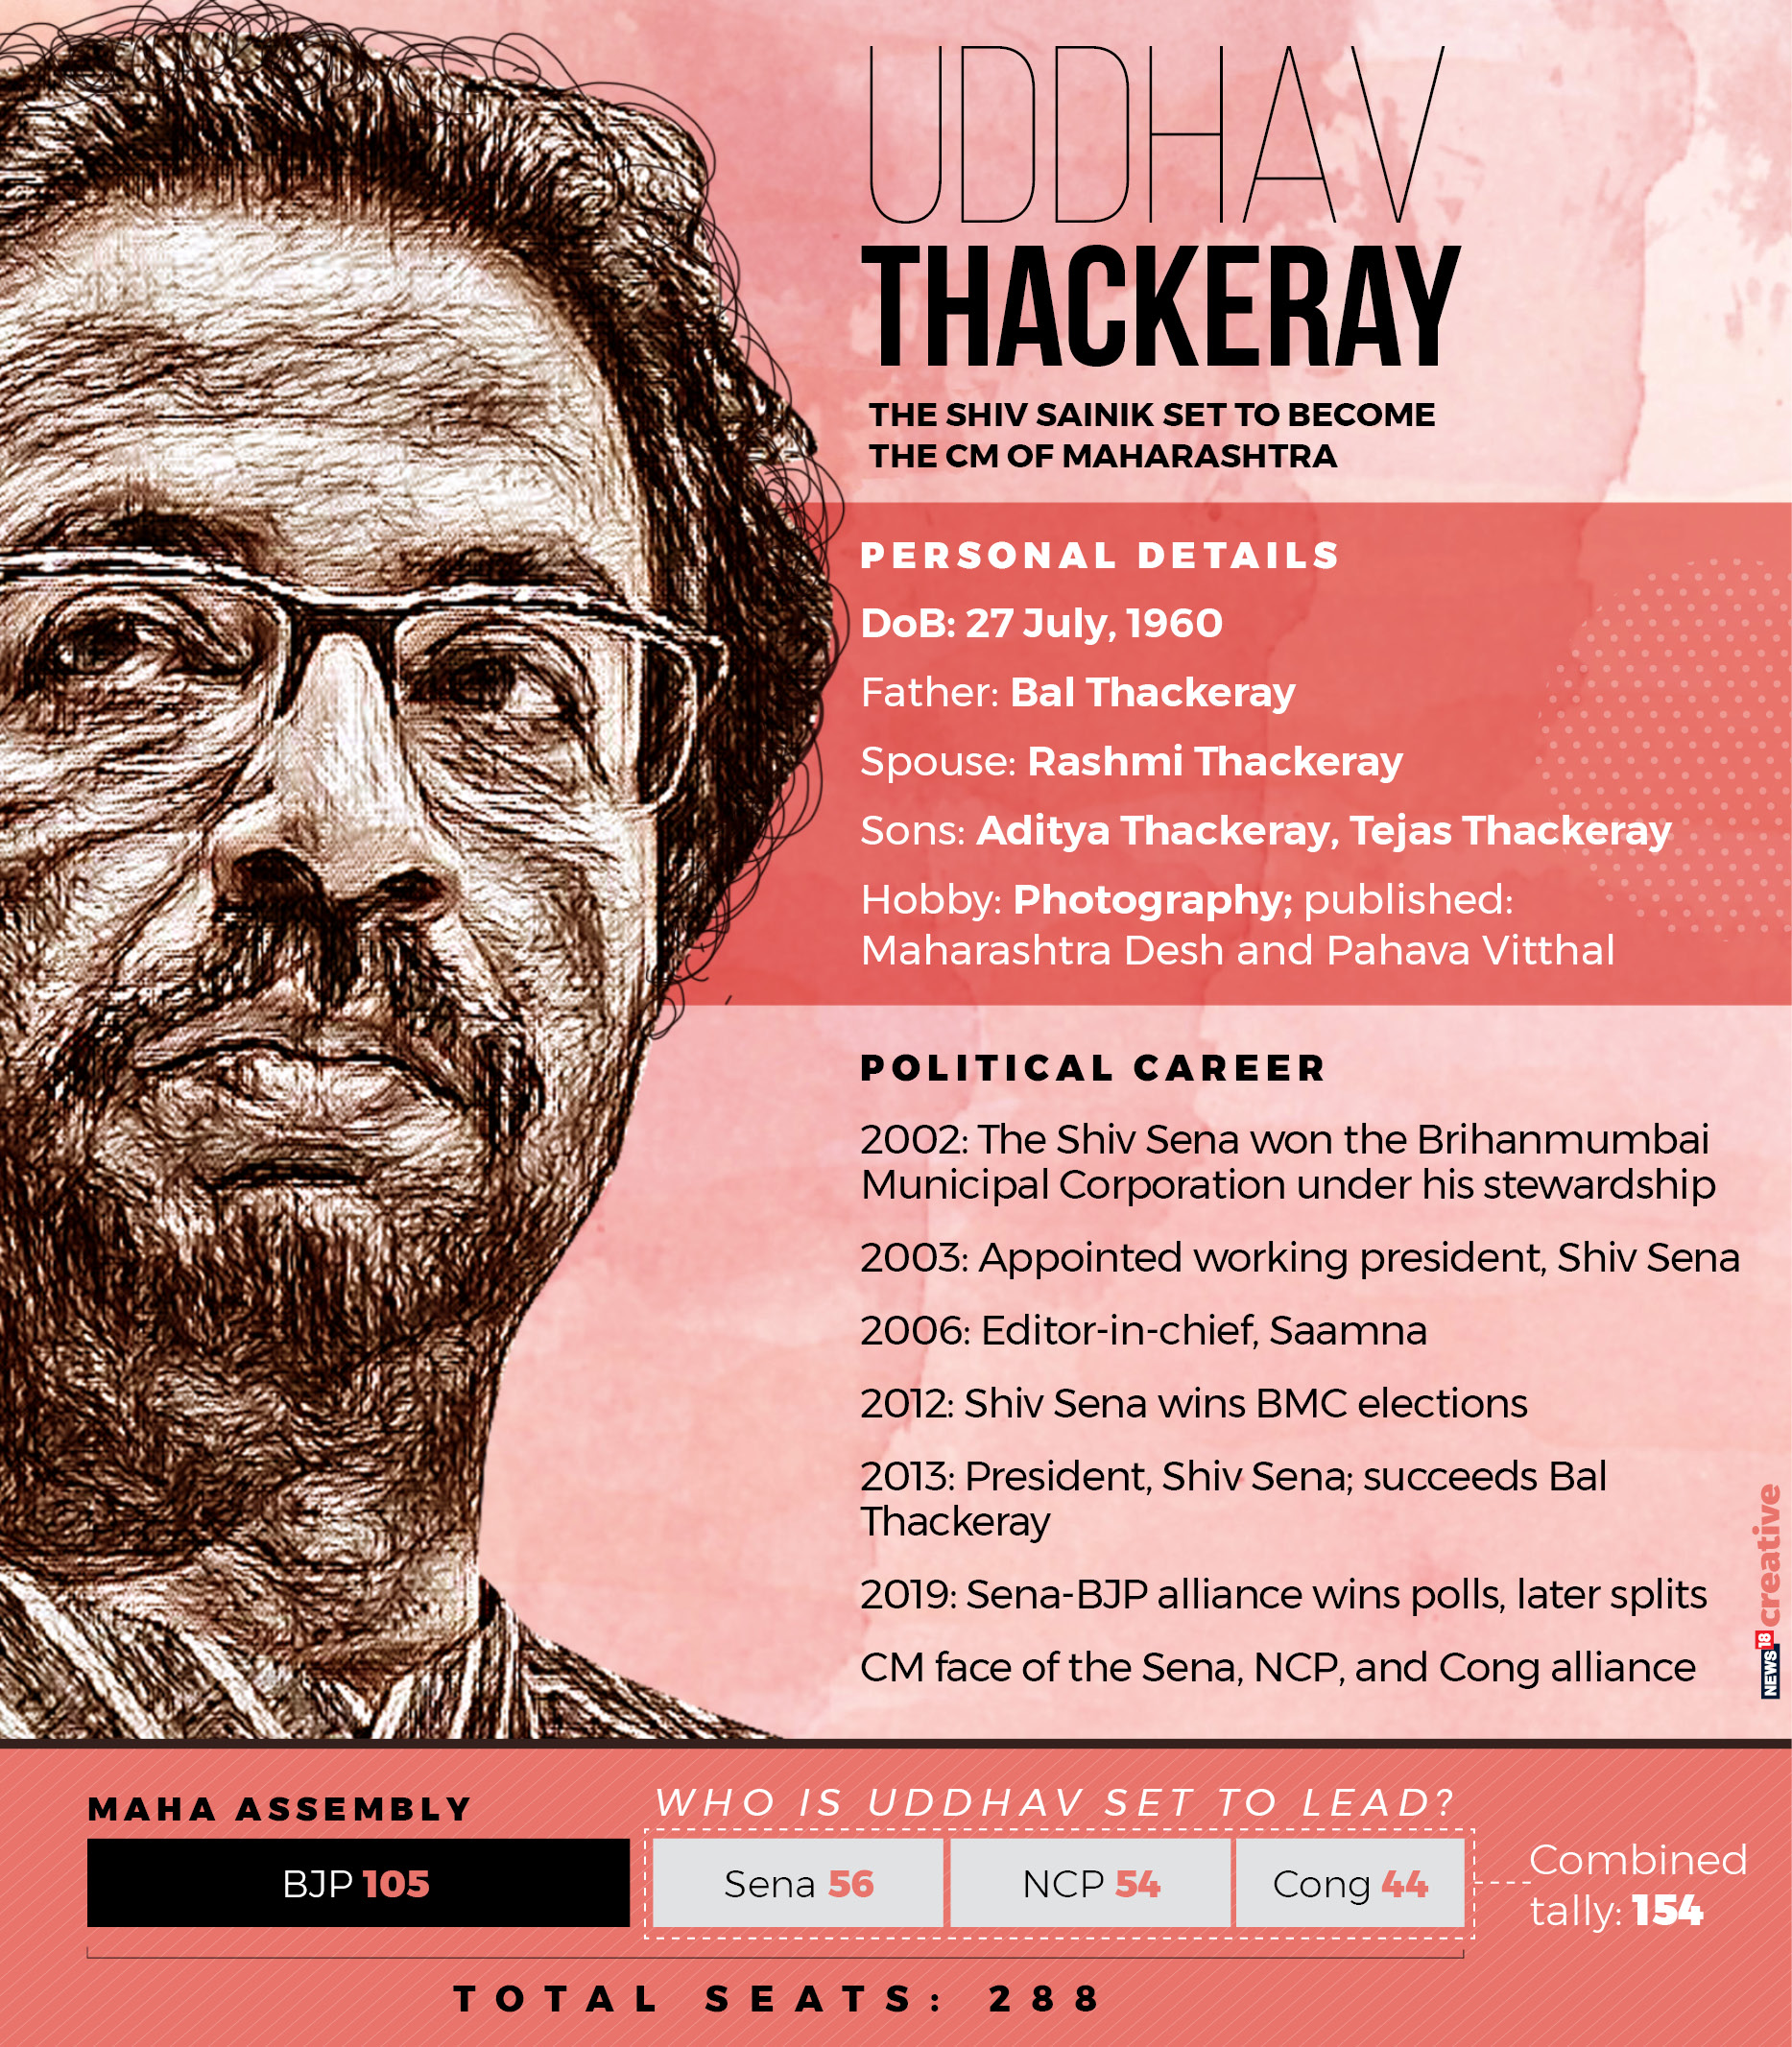 Maharashtra's next CM: A look at Uddhav Thackeray's CV